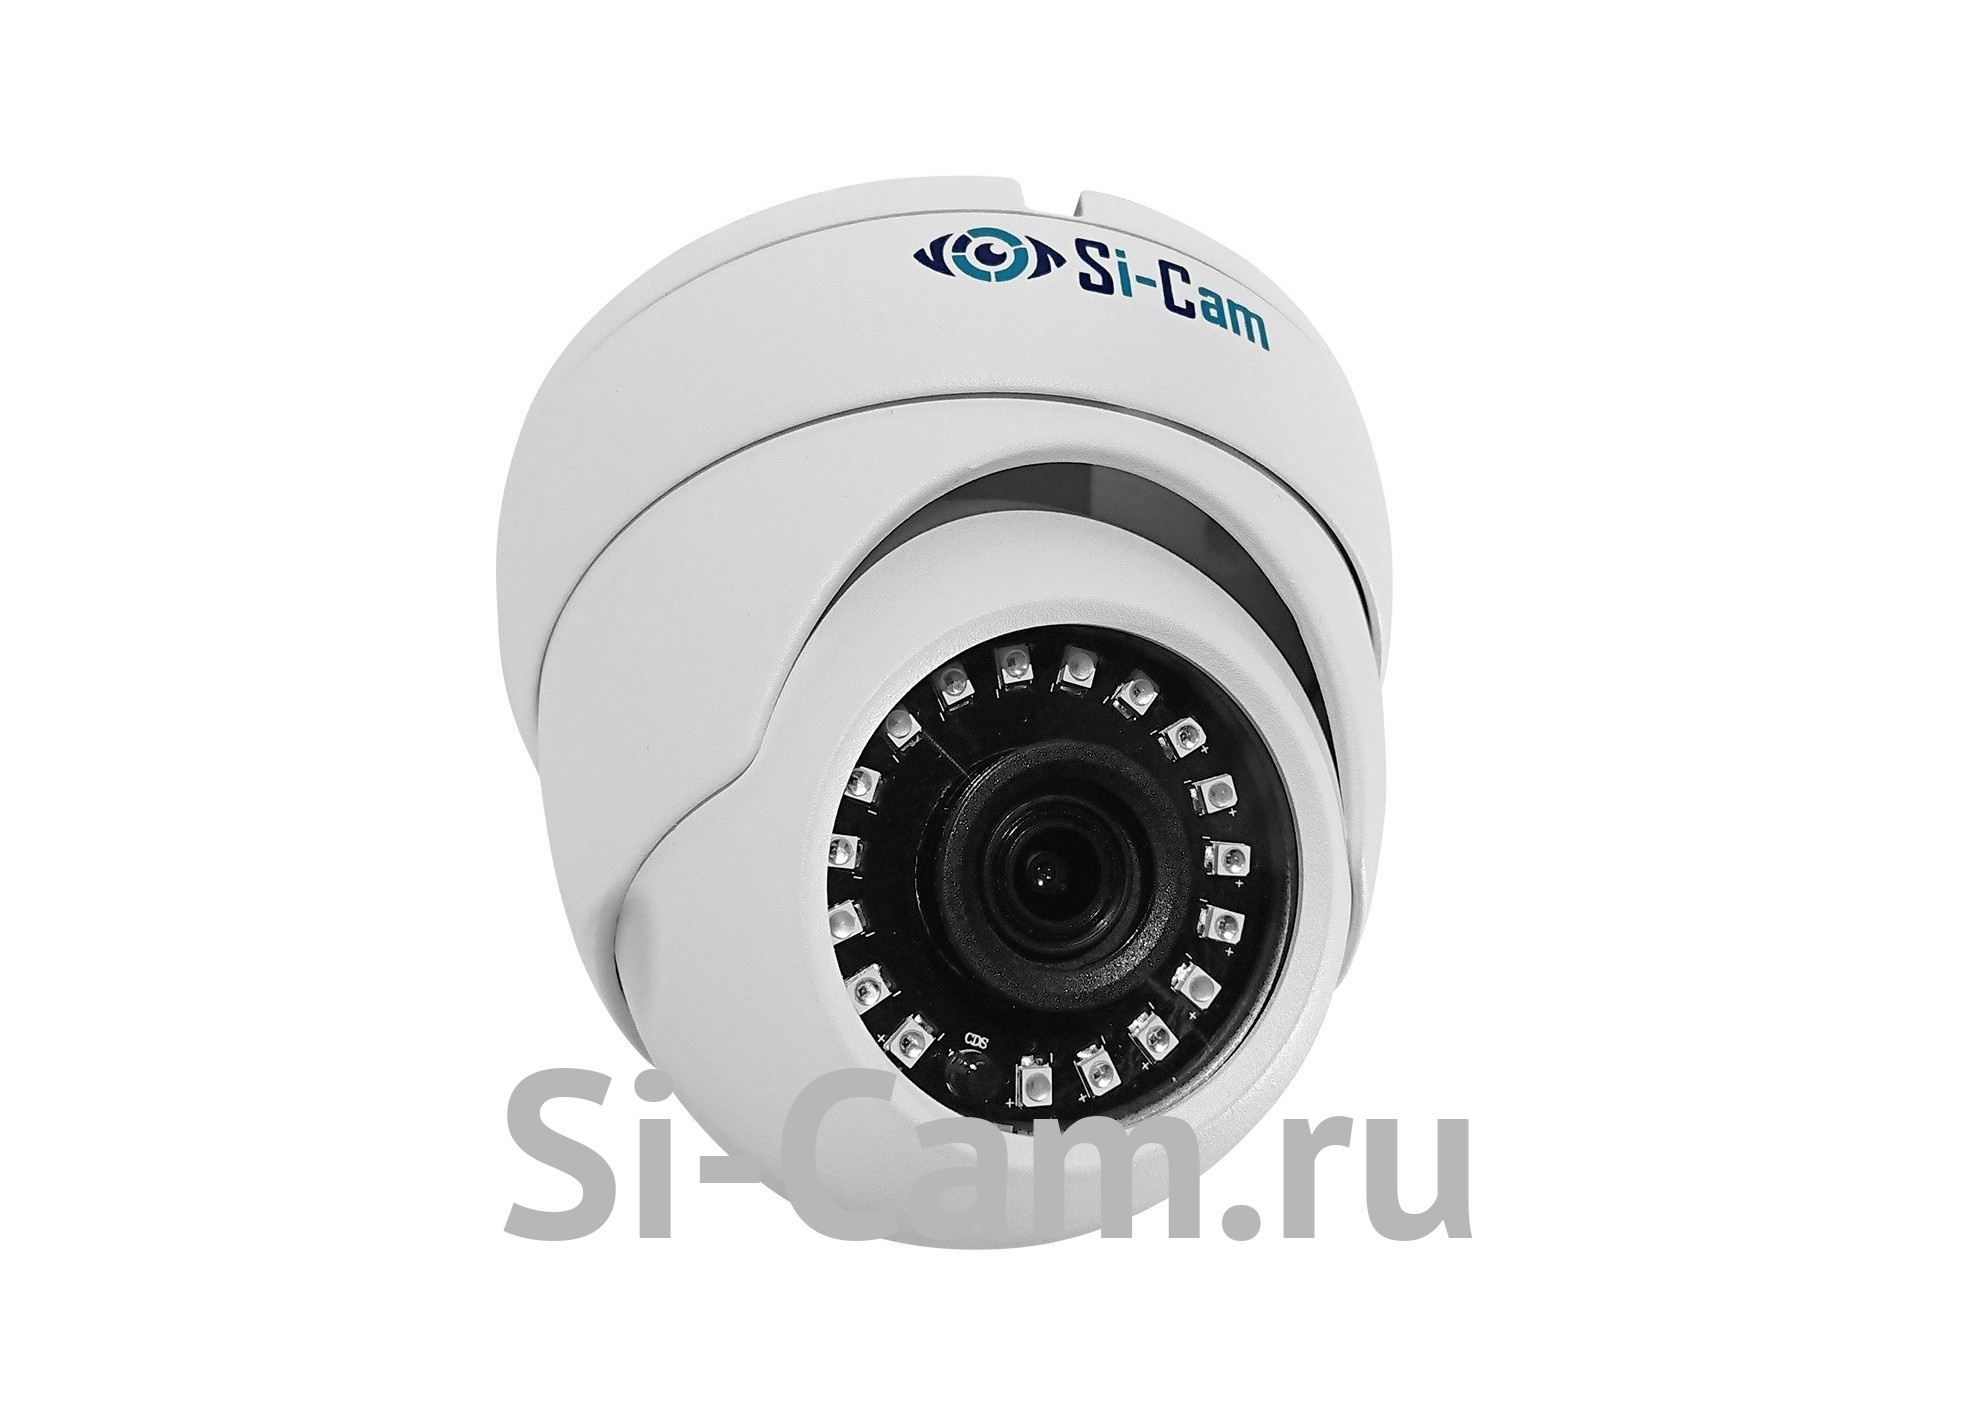 Si-Cam SC-DS400Fm IR Купольная внутренняя IP видеокамера